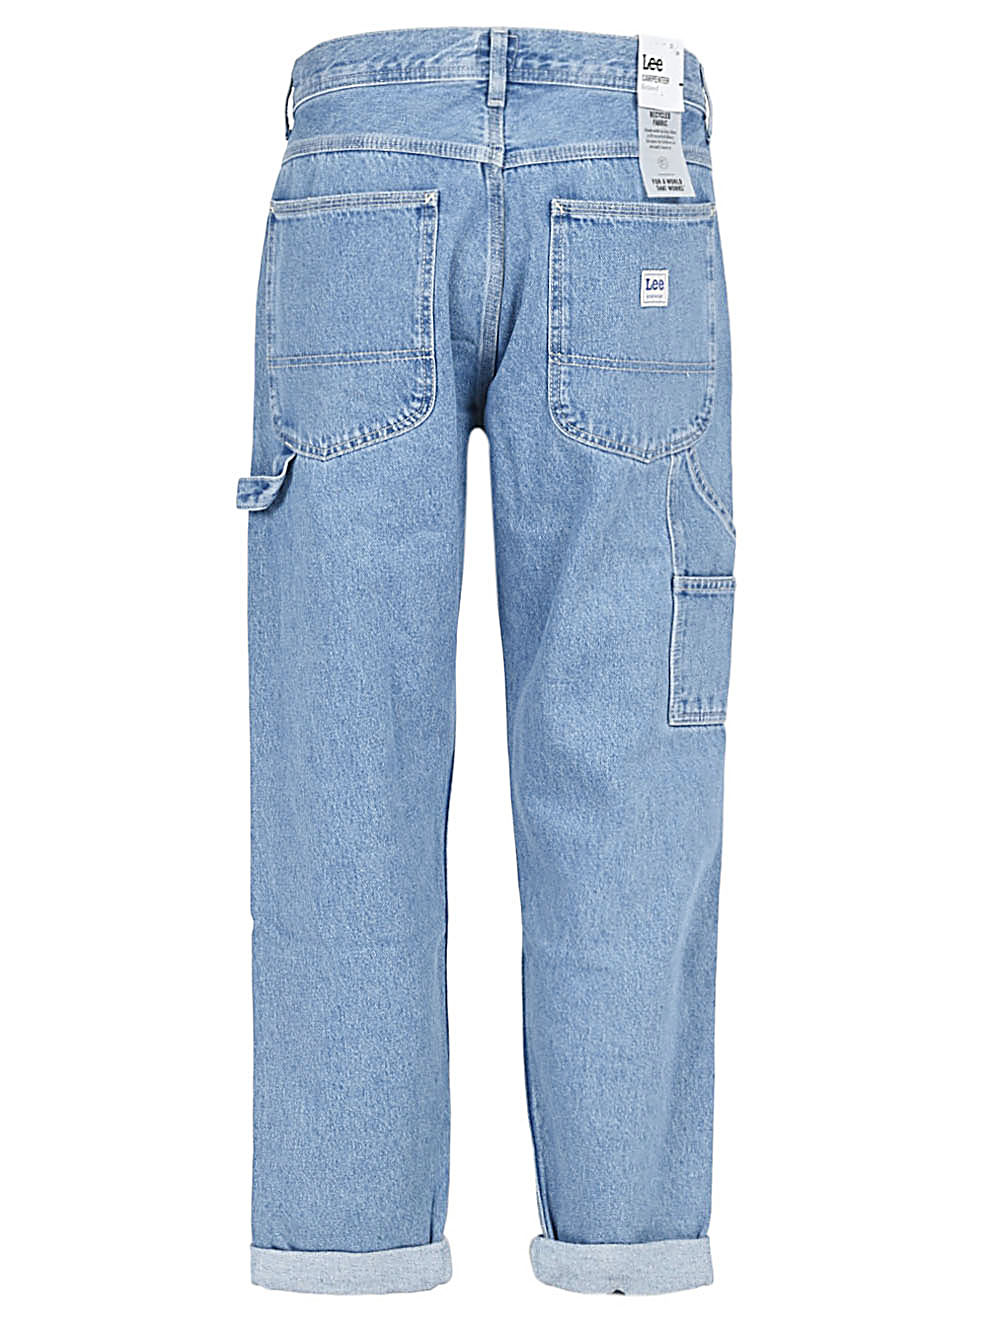 Lee Jeans LEE JEANS- Denim Cotton Jeans